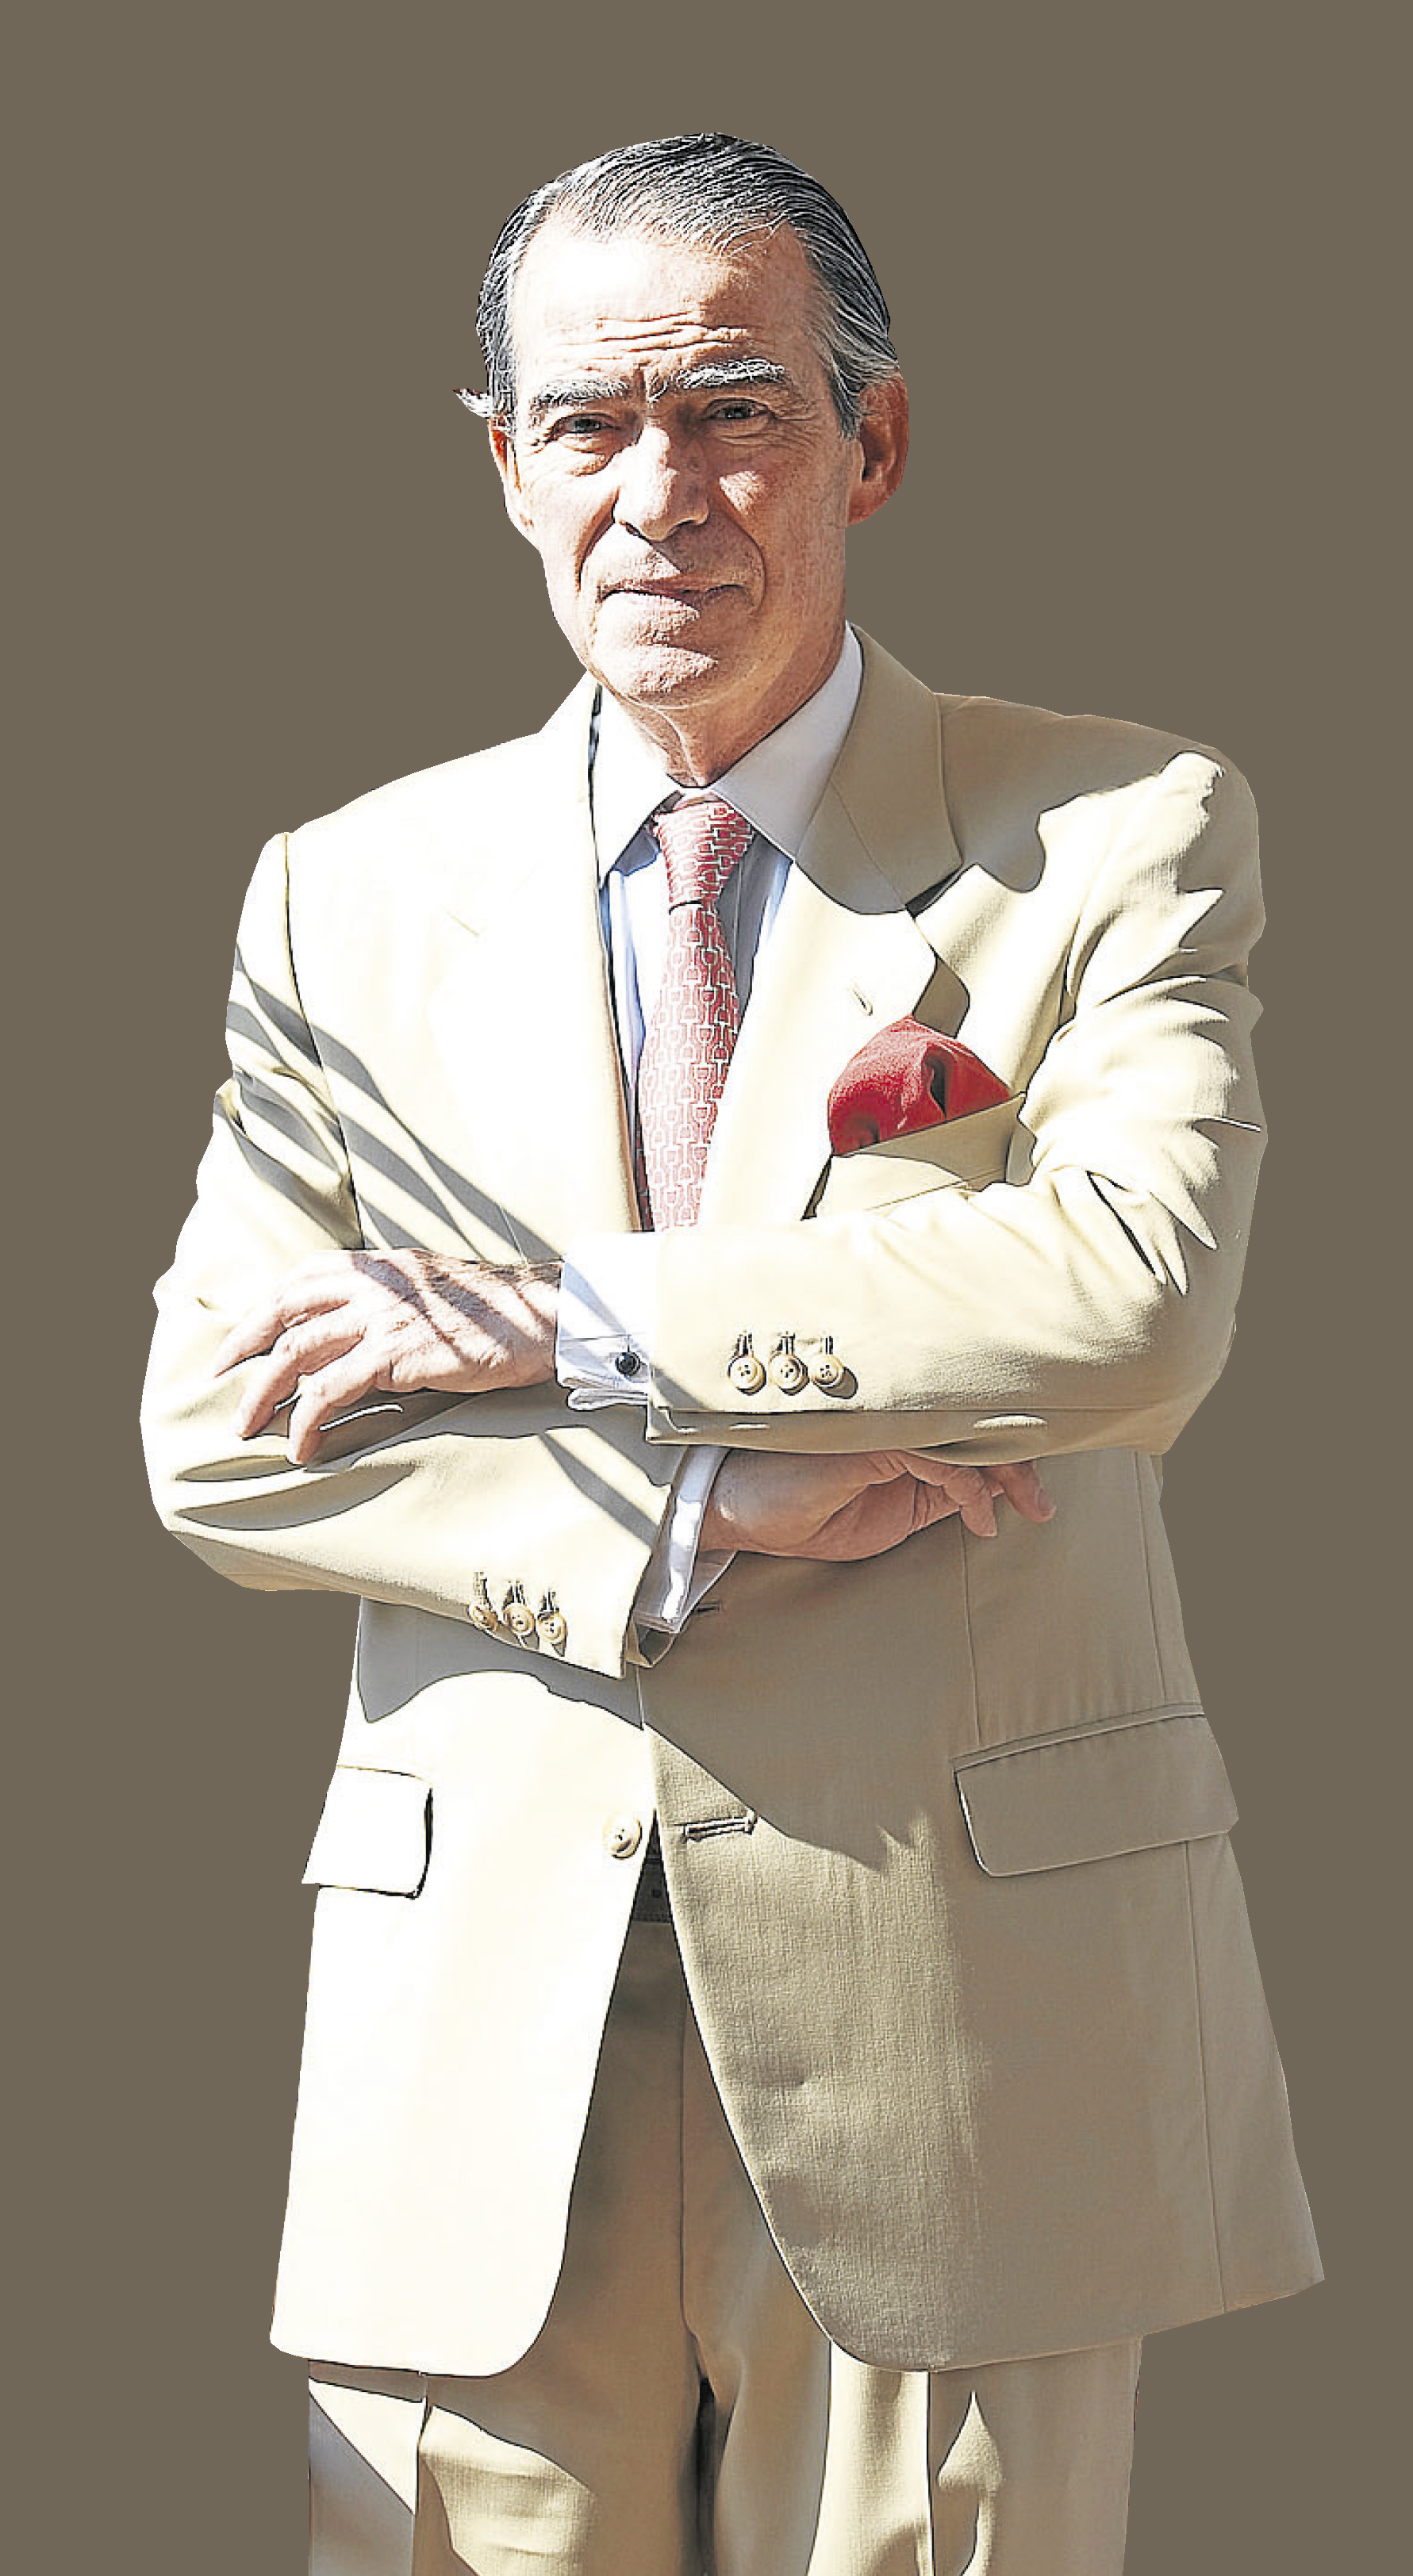 Prof. D. Ricardo Lozano Mantecón. In memoriam